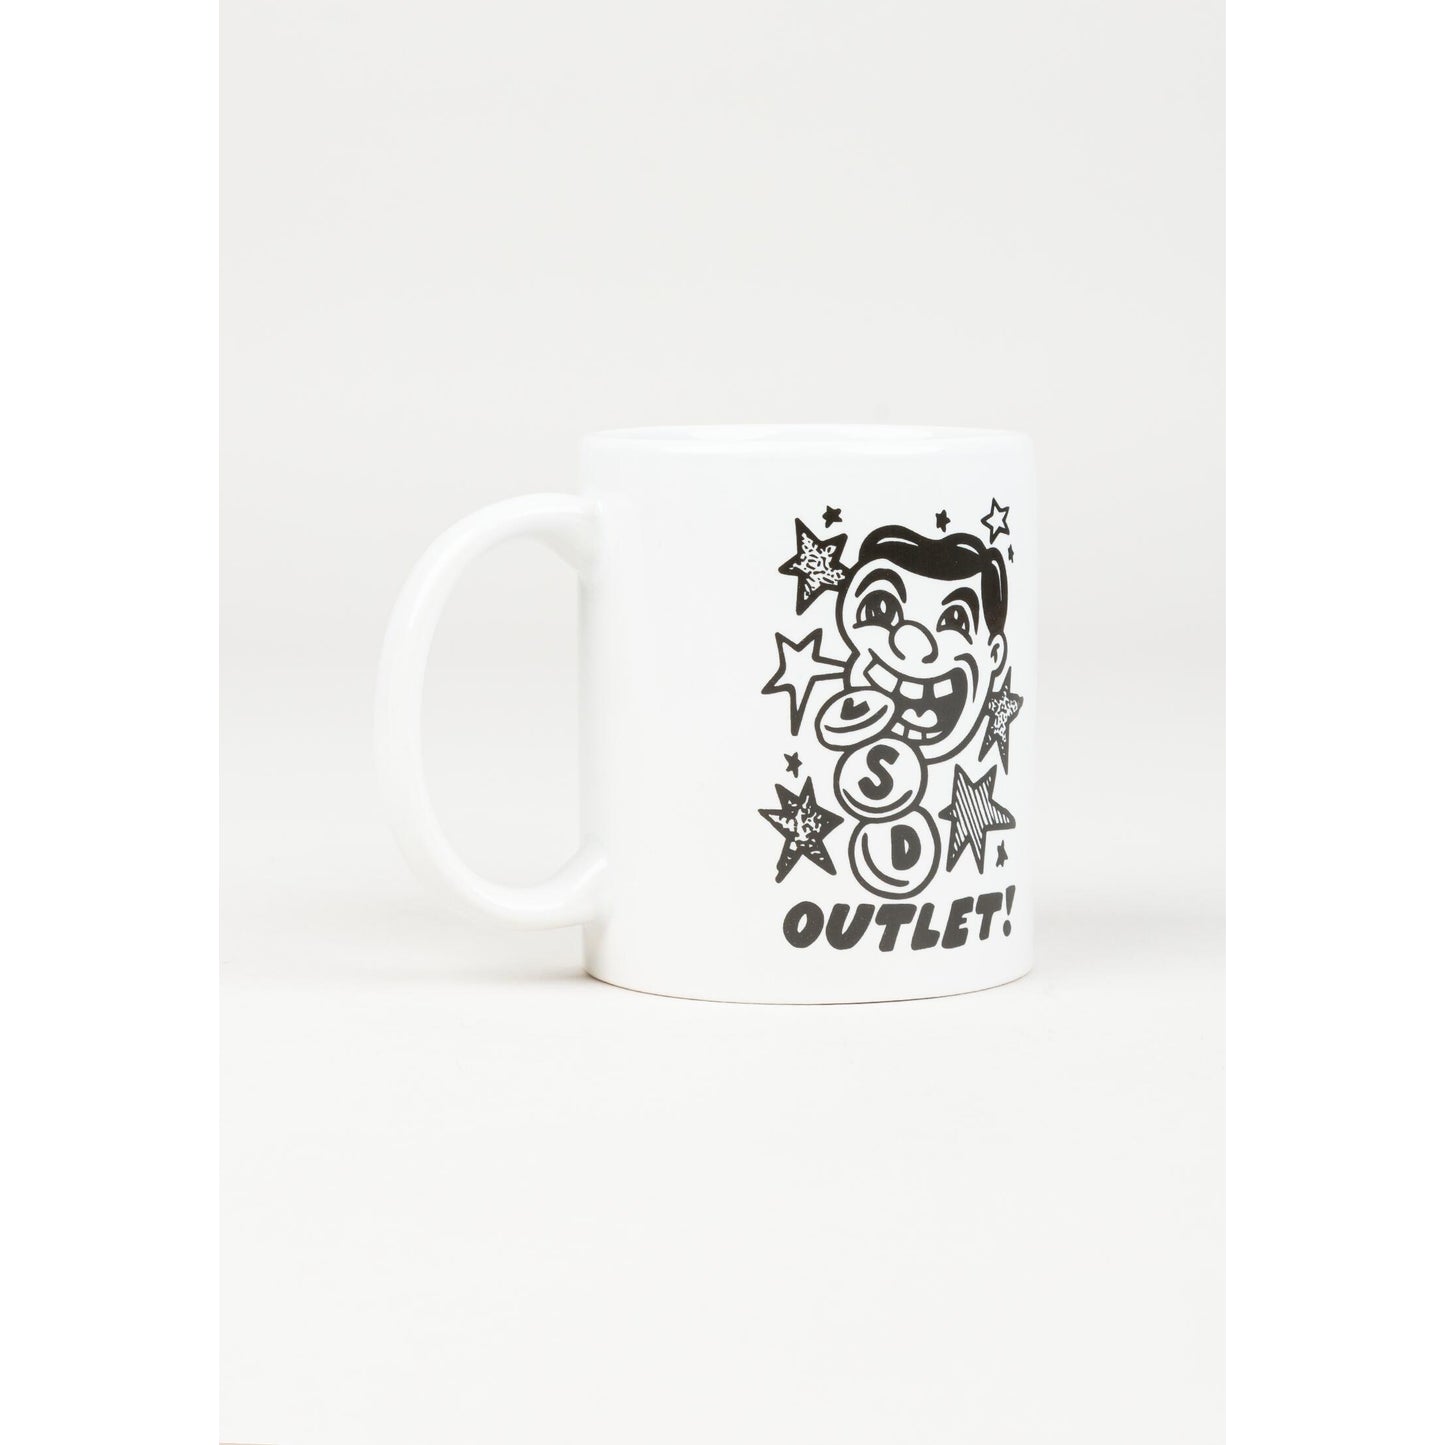 LSC Outlet Mug (White)